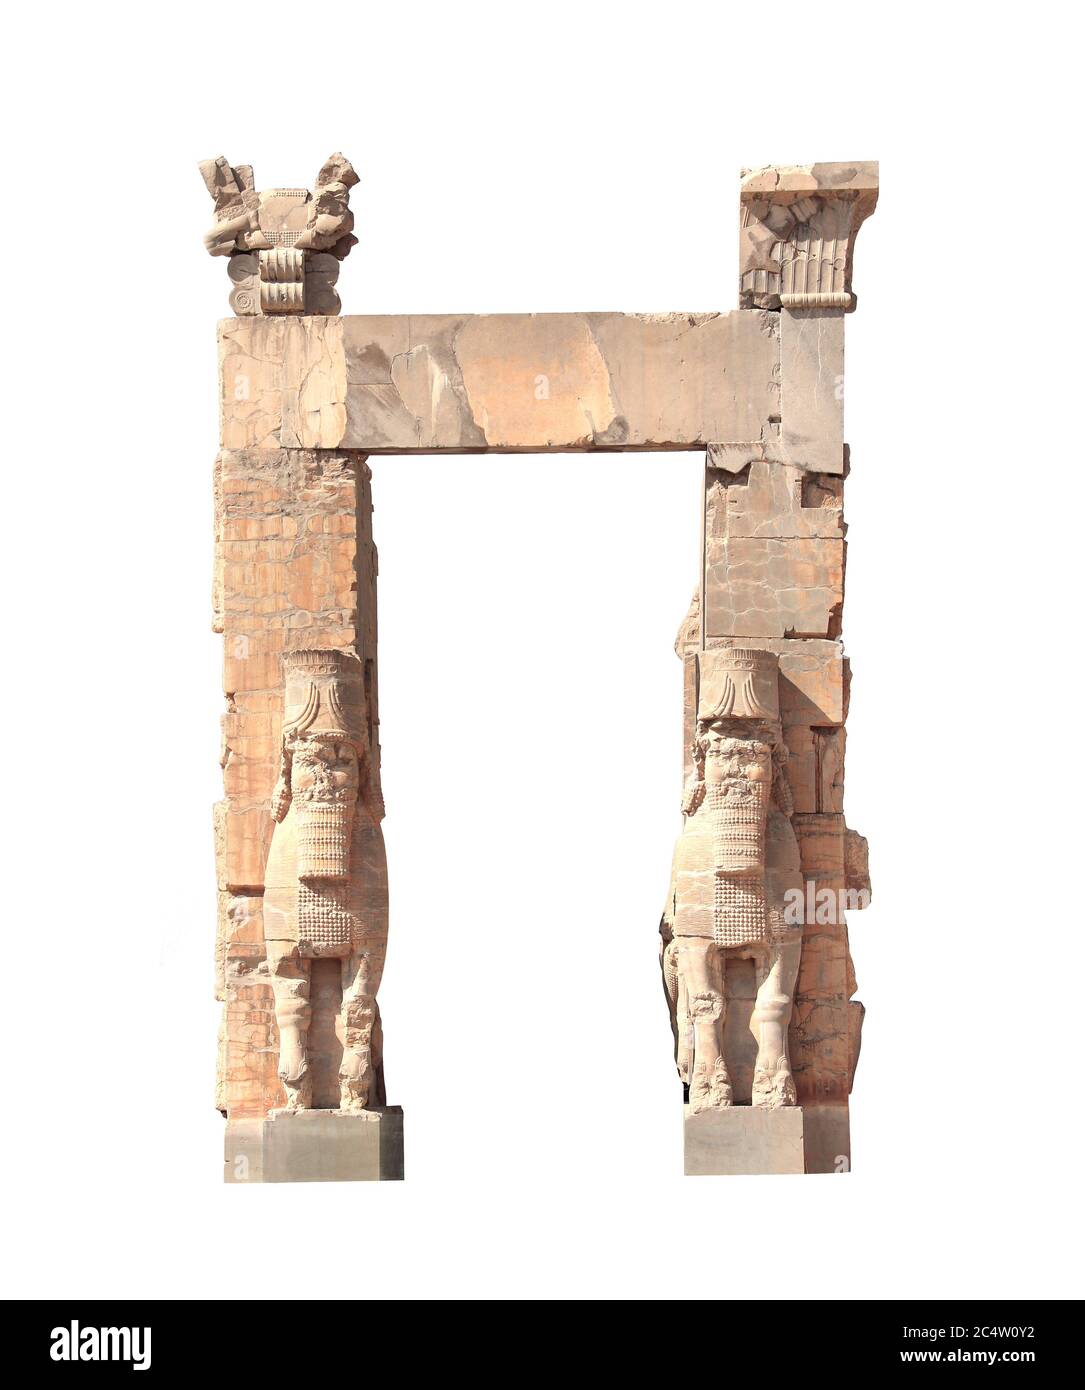 Vista frontale della porta di tutte le nazioni (porta Xerxes) con statue di pietra di lamassu nell'antica città di Persepolis, Iran. Sito patrimonio dell'umanità dell'UNESCO. Isolato o Foto Stock